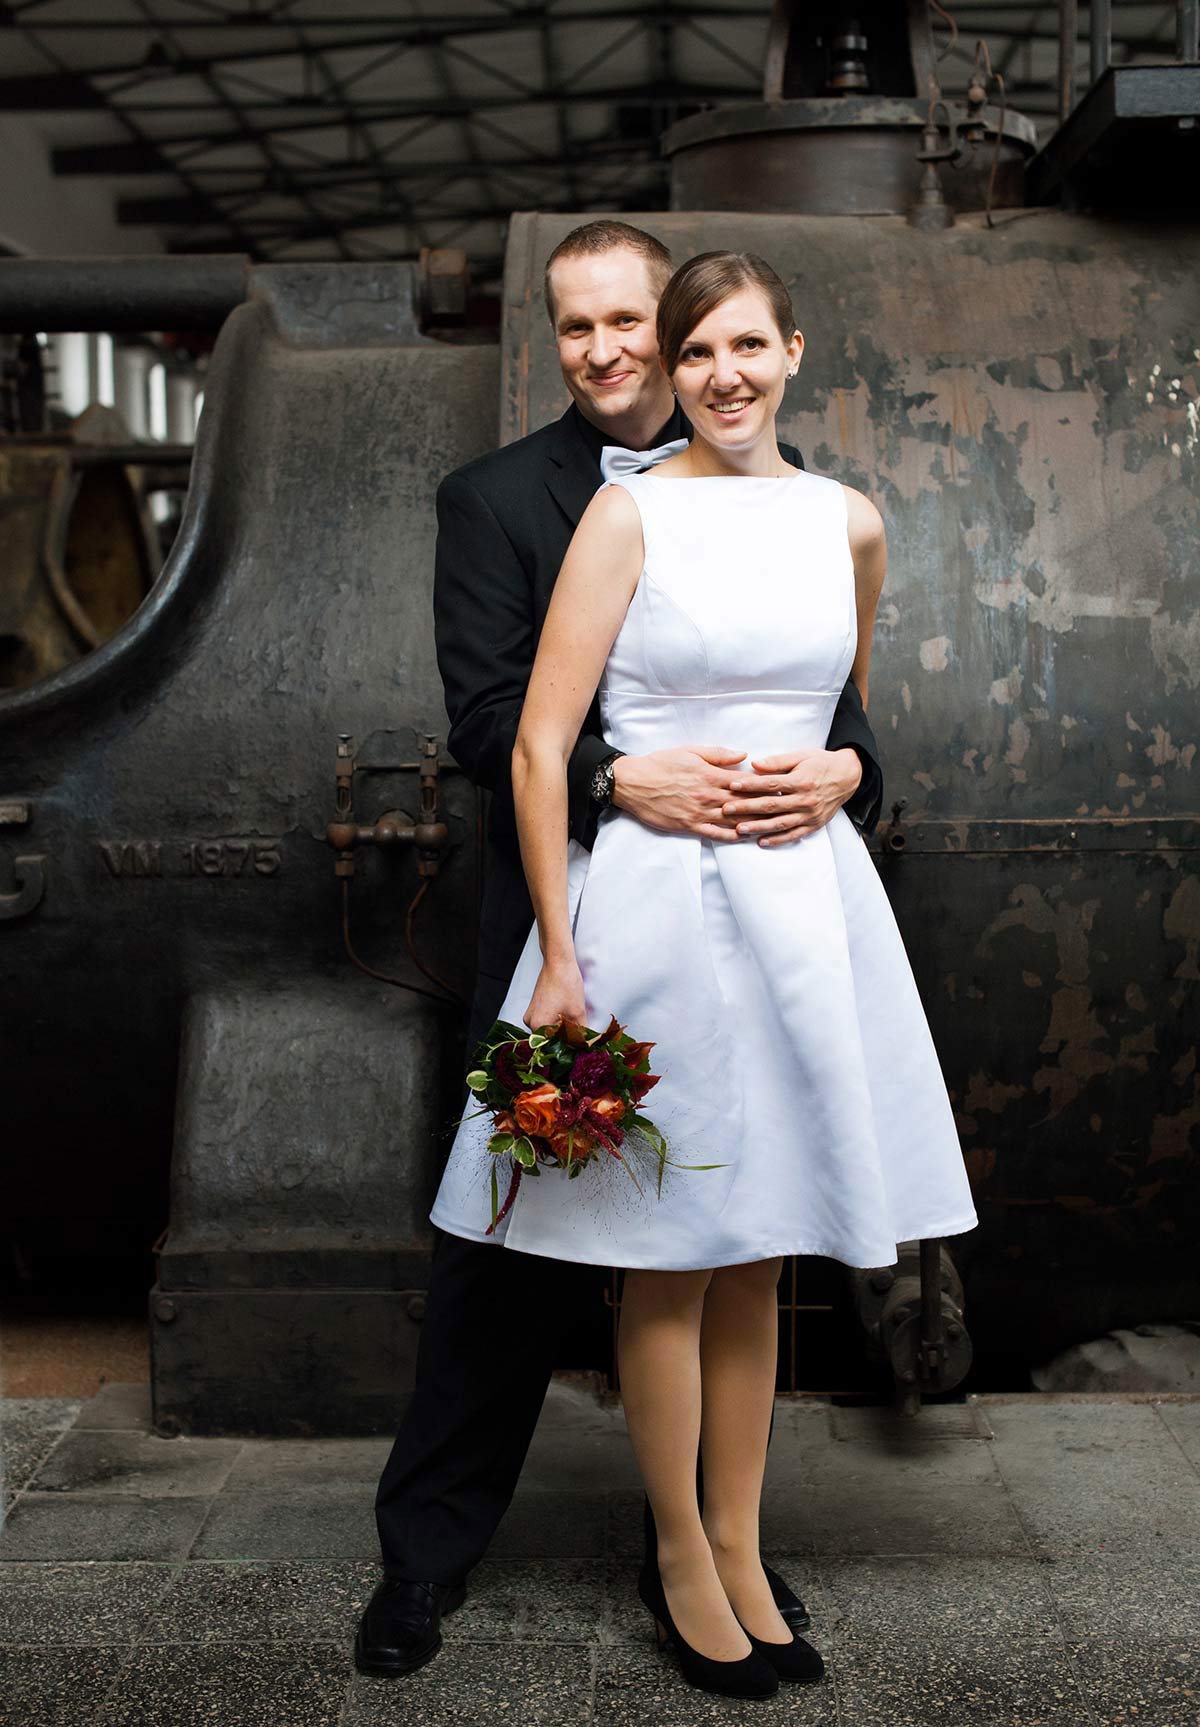 Honeylight Hochzeitsfotograf: Portrait des Brautpaares in der Hochzeitslocation Zeche Zollern in Dortmund